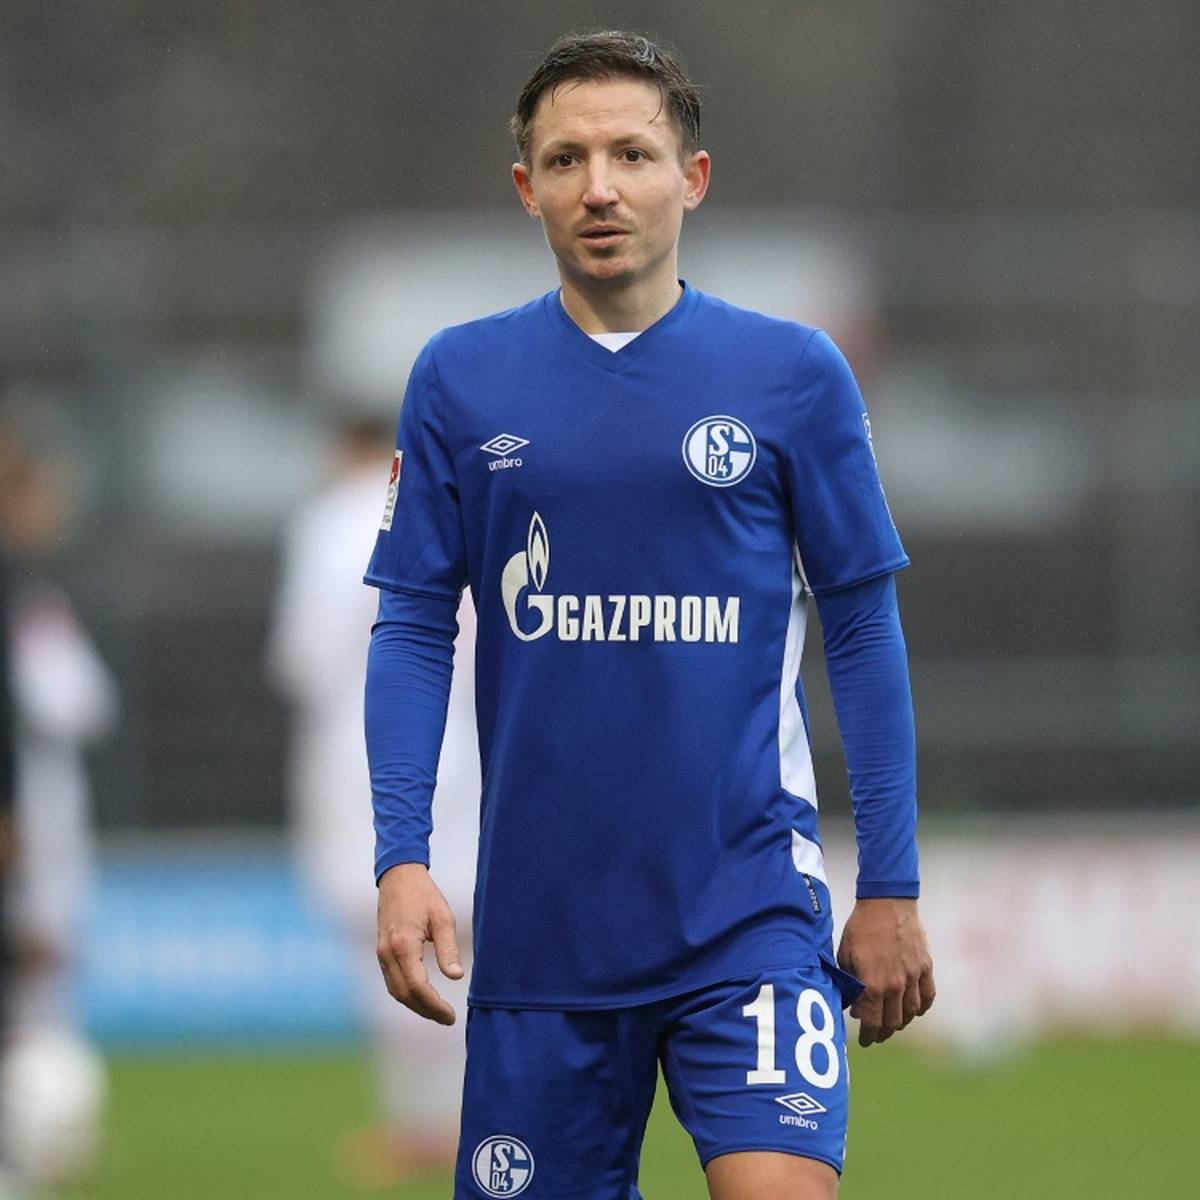 Fußball-Zweitligist Arminia Bielefeld hat den offensiven Mittelfeldspieler Marc Rzatkowski von Bundesligist Schalke 04 verpflichtet.